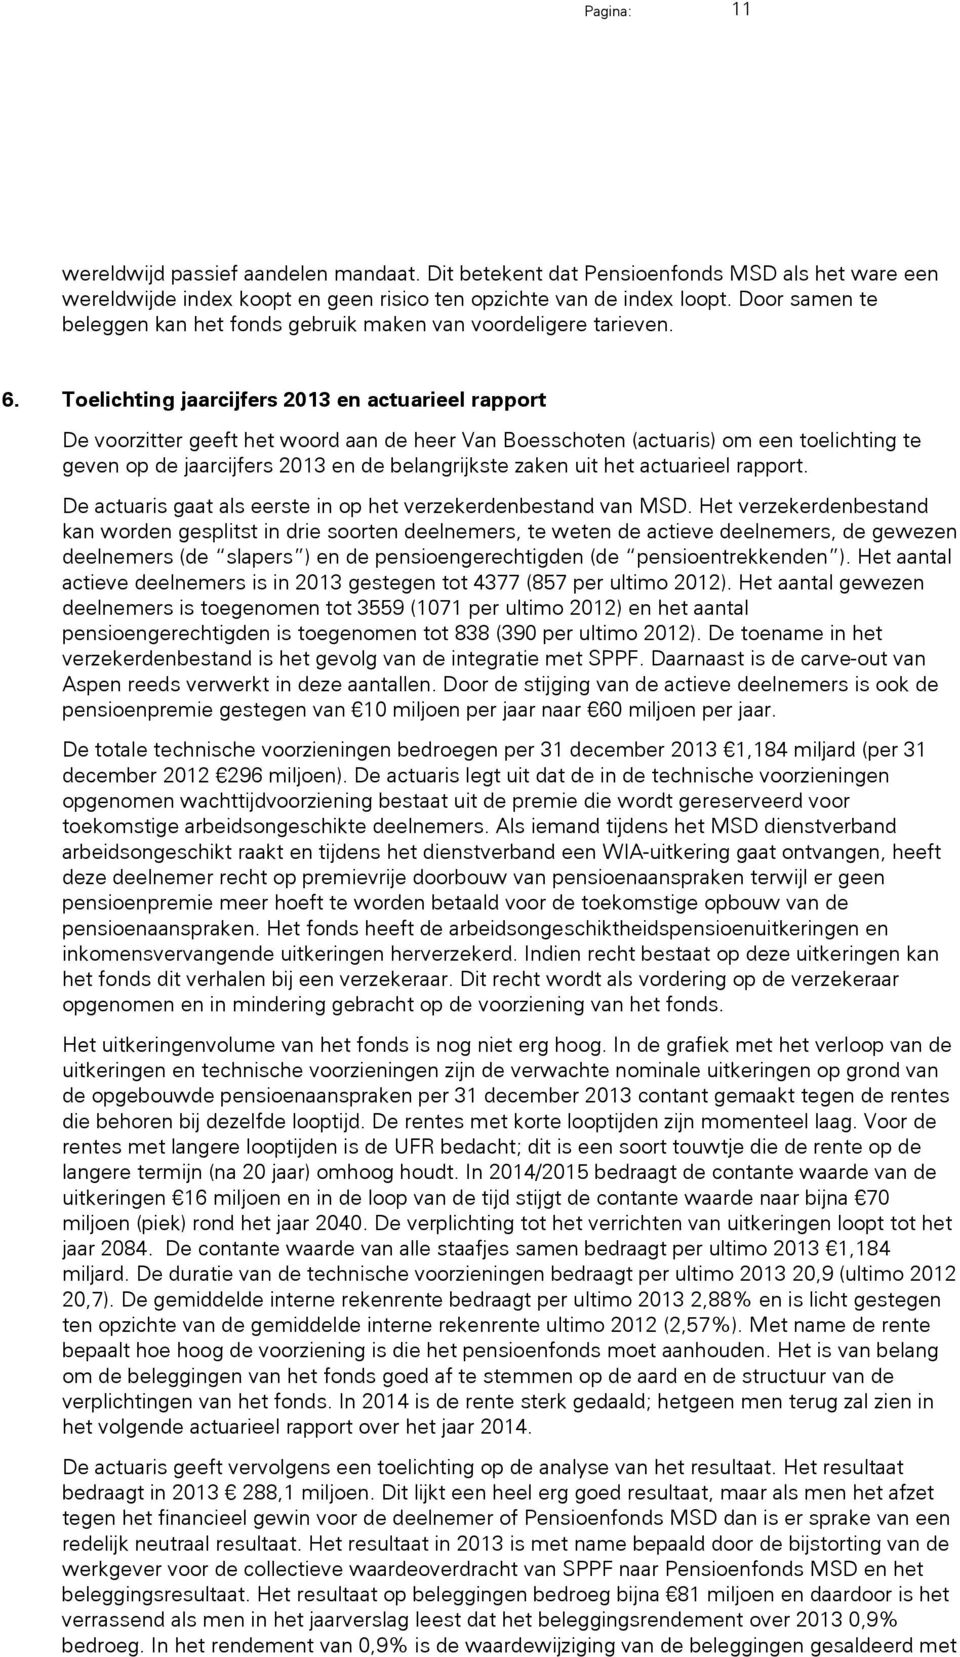 Toelichting jaarcijfers 2013 en actuarieel rapport De voorzitter geeft het woord aan de heer Van Boesschoten (actuaris) om een toelichting te geven op de jaarcijfers 2013 en de belangrijkste zaken